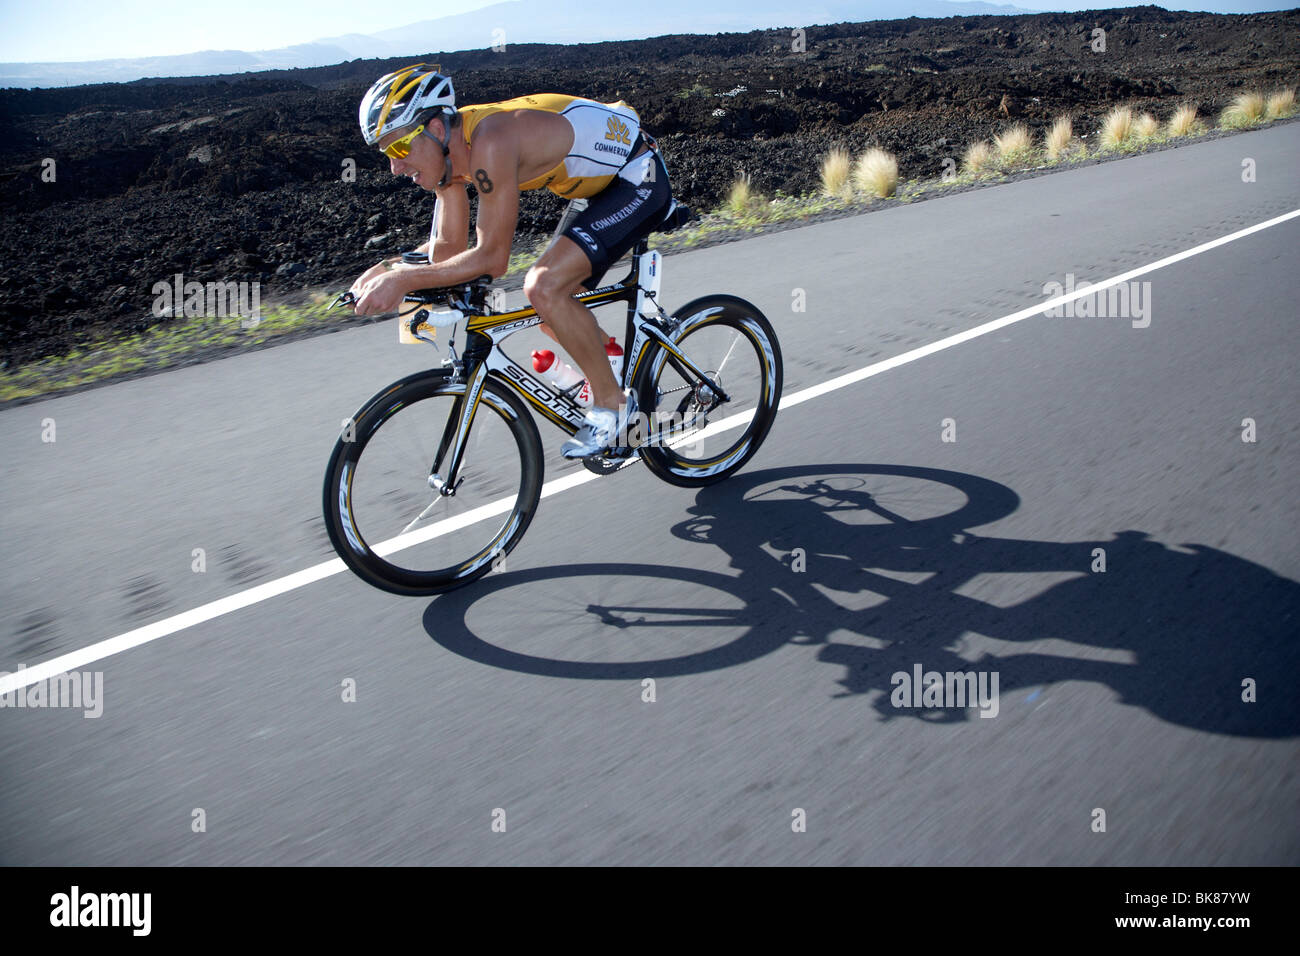 La triathlète professionnelle suisse Mathias Hecht sur le parcours vélo de l'Ironman Triathlon World Championship à Kona, Hawaii, USA Banque D'Images